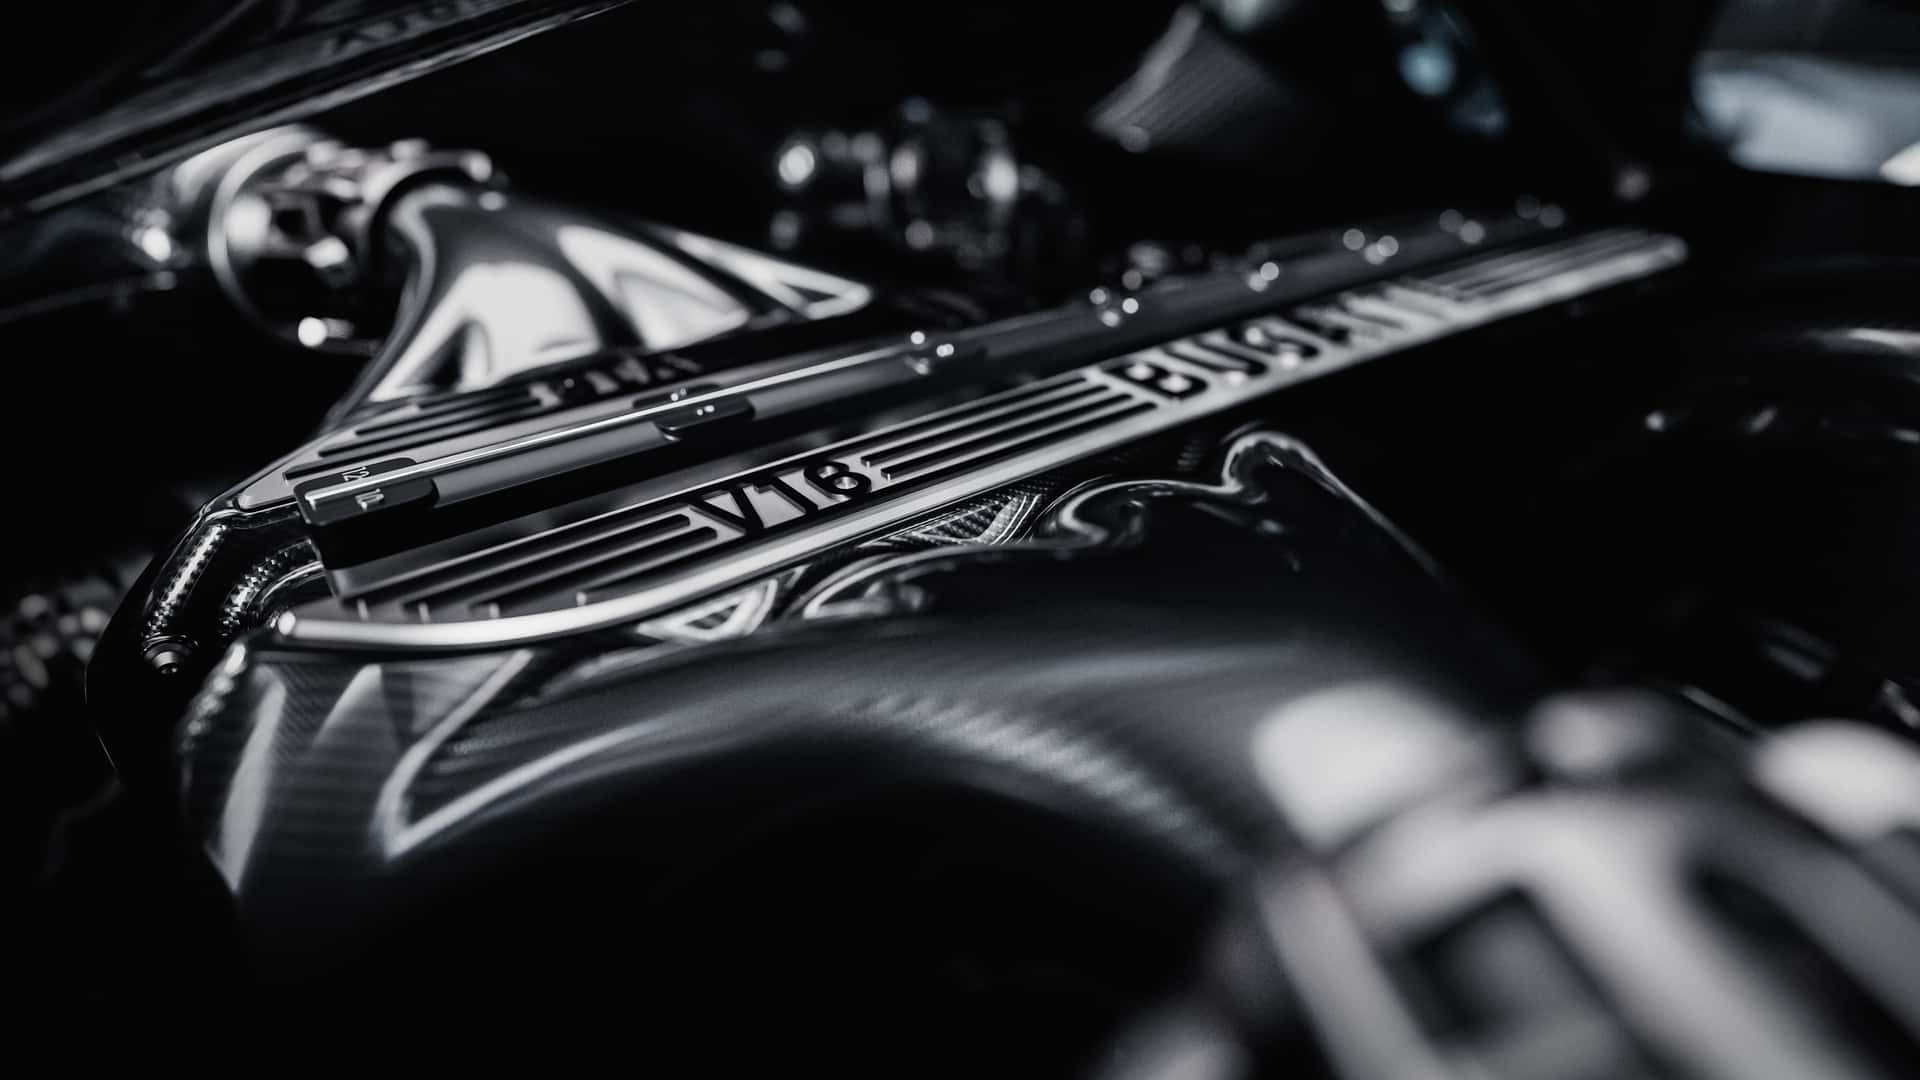 Αυτή είναι η νέα Bugatti Turbillon: Ένα έργο τέχνης αξίας 3,6 εκατομμυρίων ευρώ